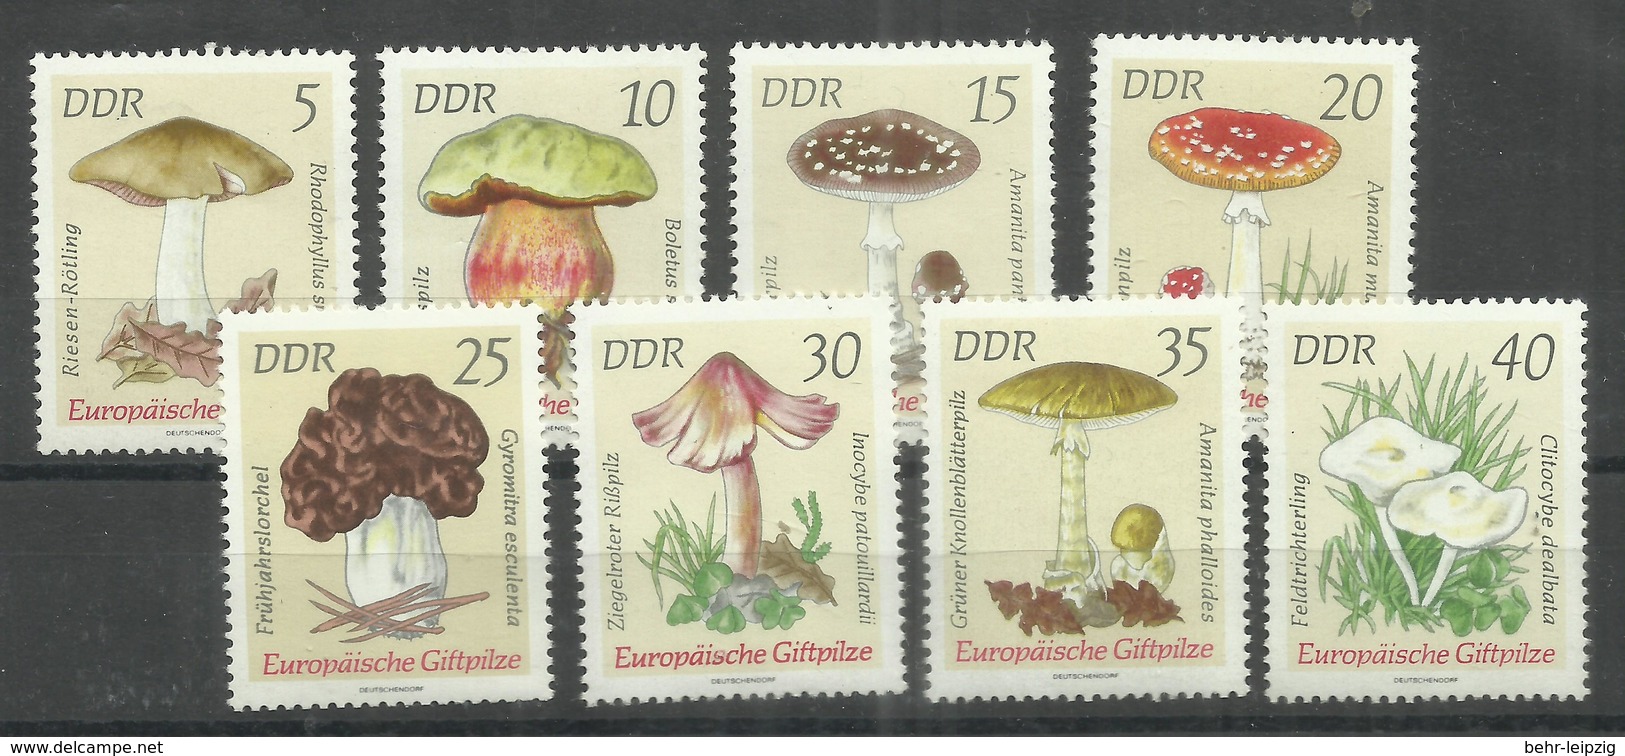 DDR 1933-1940 "8 Briefmarken Mit Giftigen Pilzen, Satz Kpl." Postfrisch Mi.-Preis 3,50 - Champignons